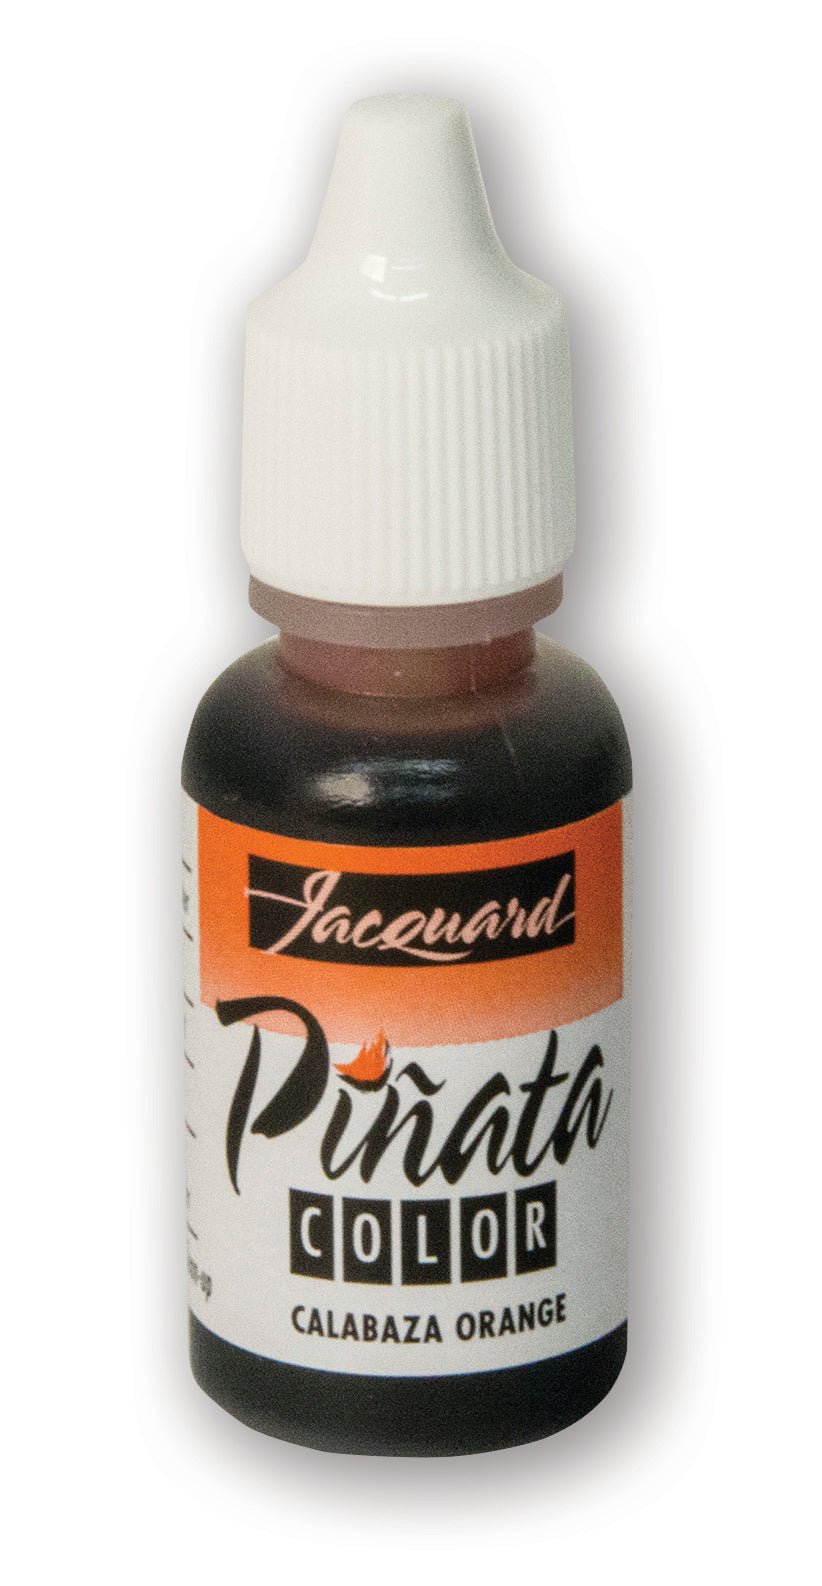 Jacquard Pinata Ink 14ml Calabaza Orange - theartshop.com.au